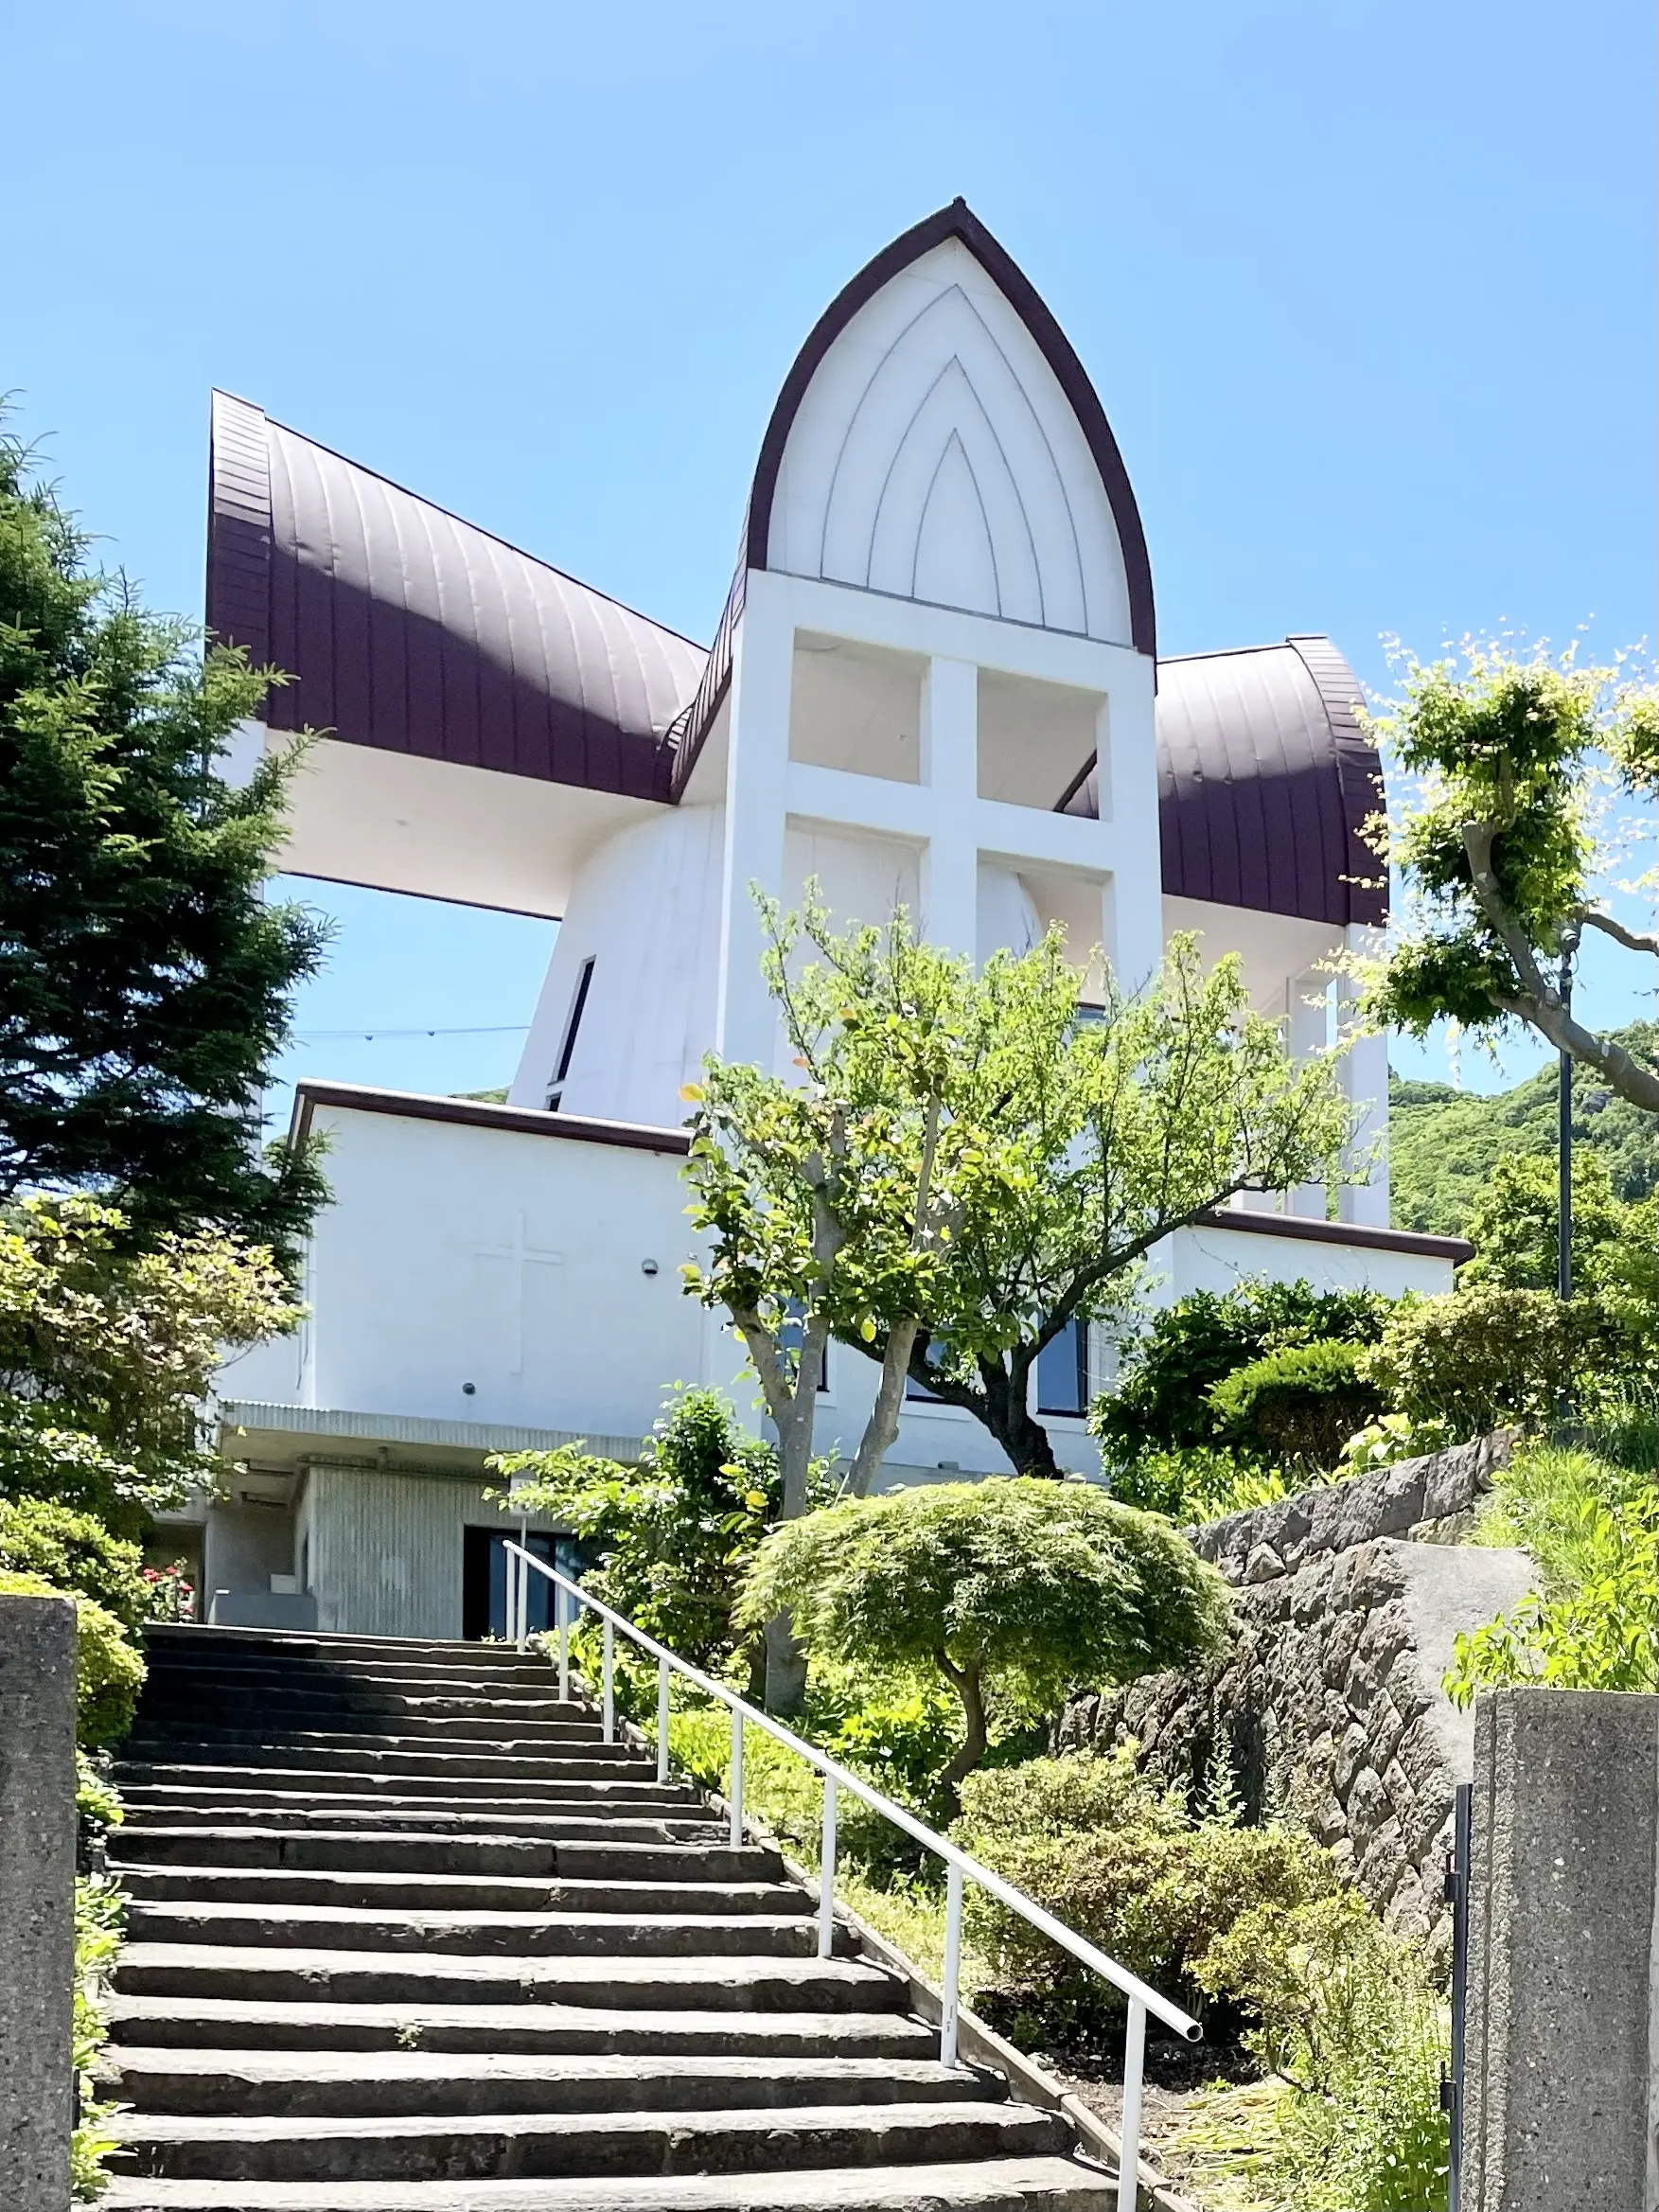 函館聖ヨハネ教会、北海道、函館、名所、有名、観光名所、屋根十字架